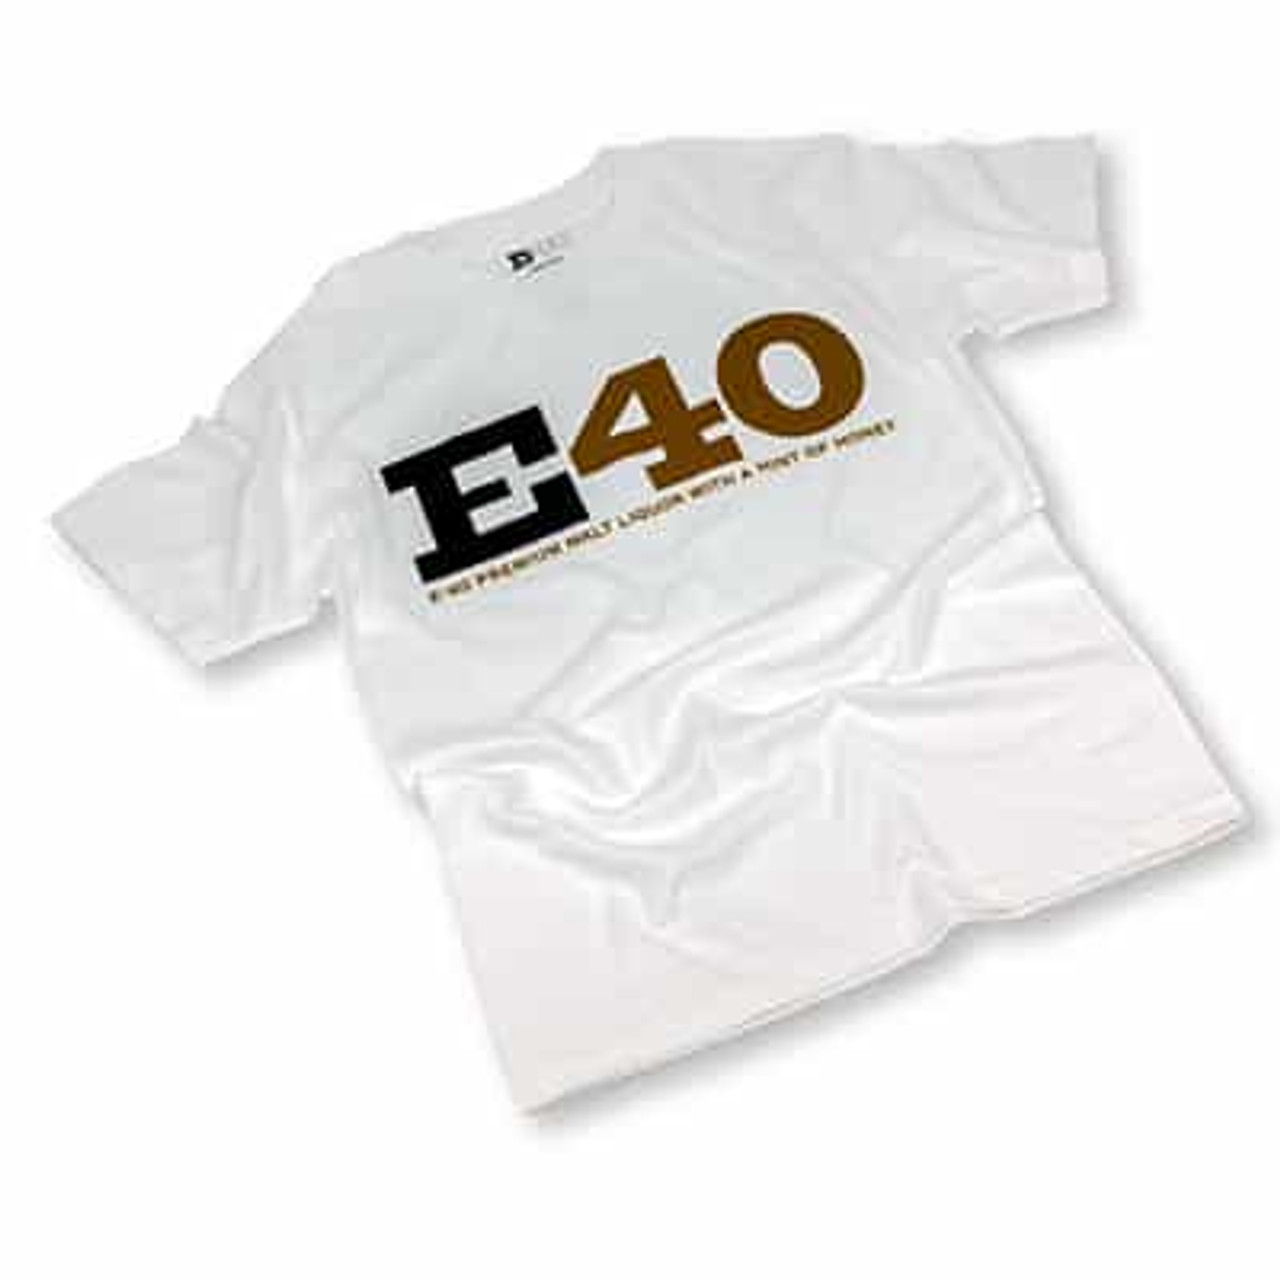 e40 warriors shirt